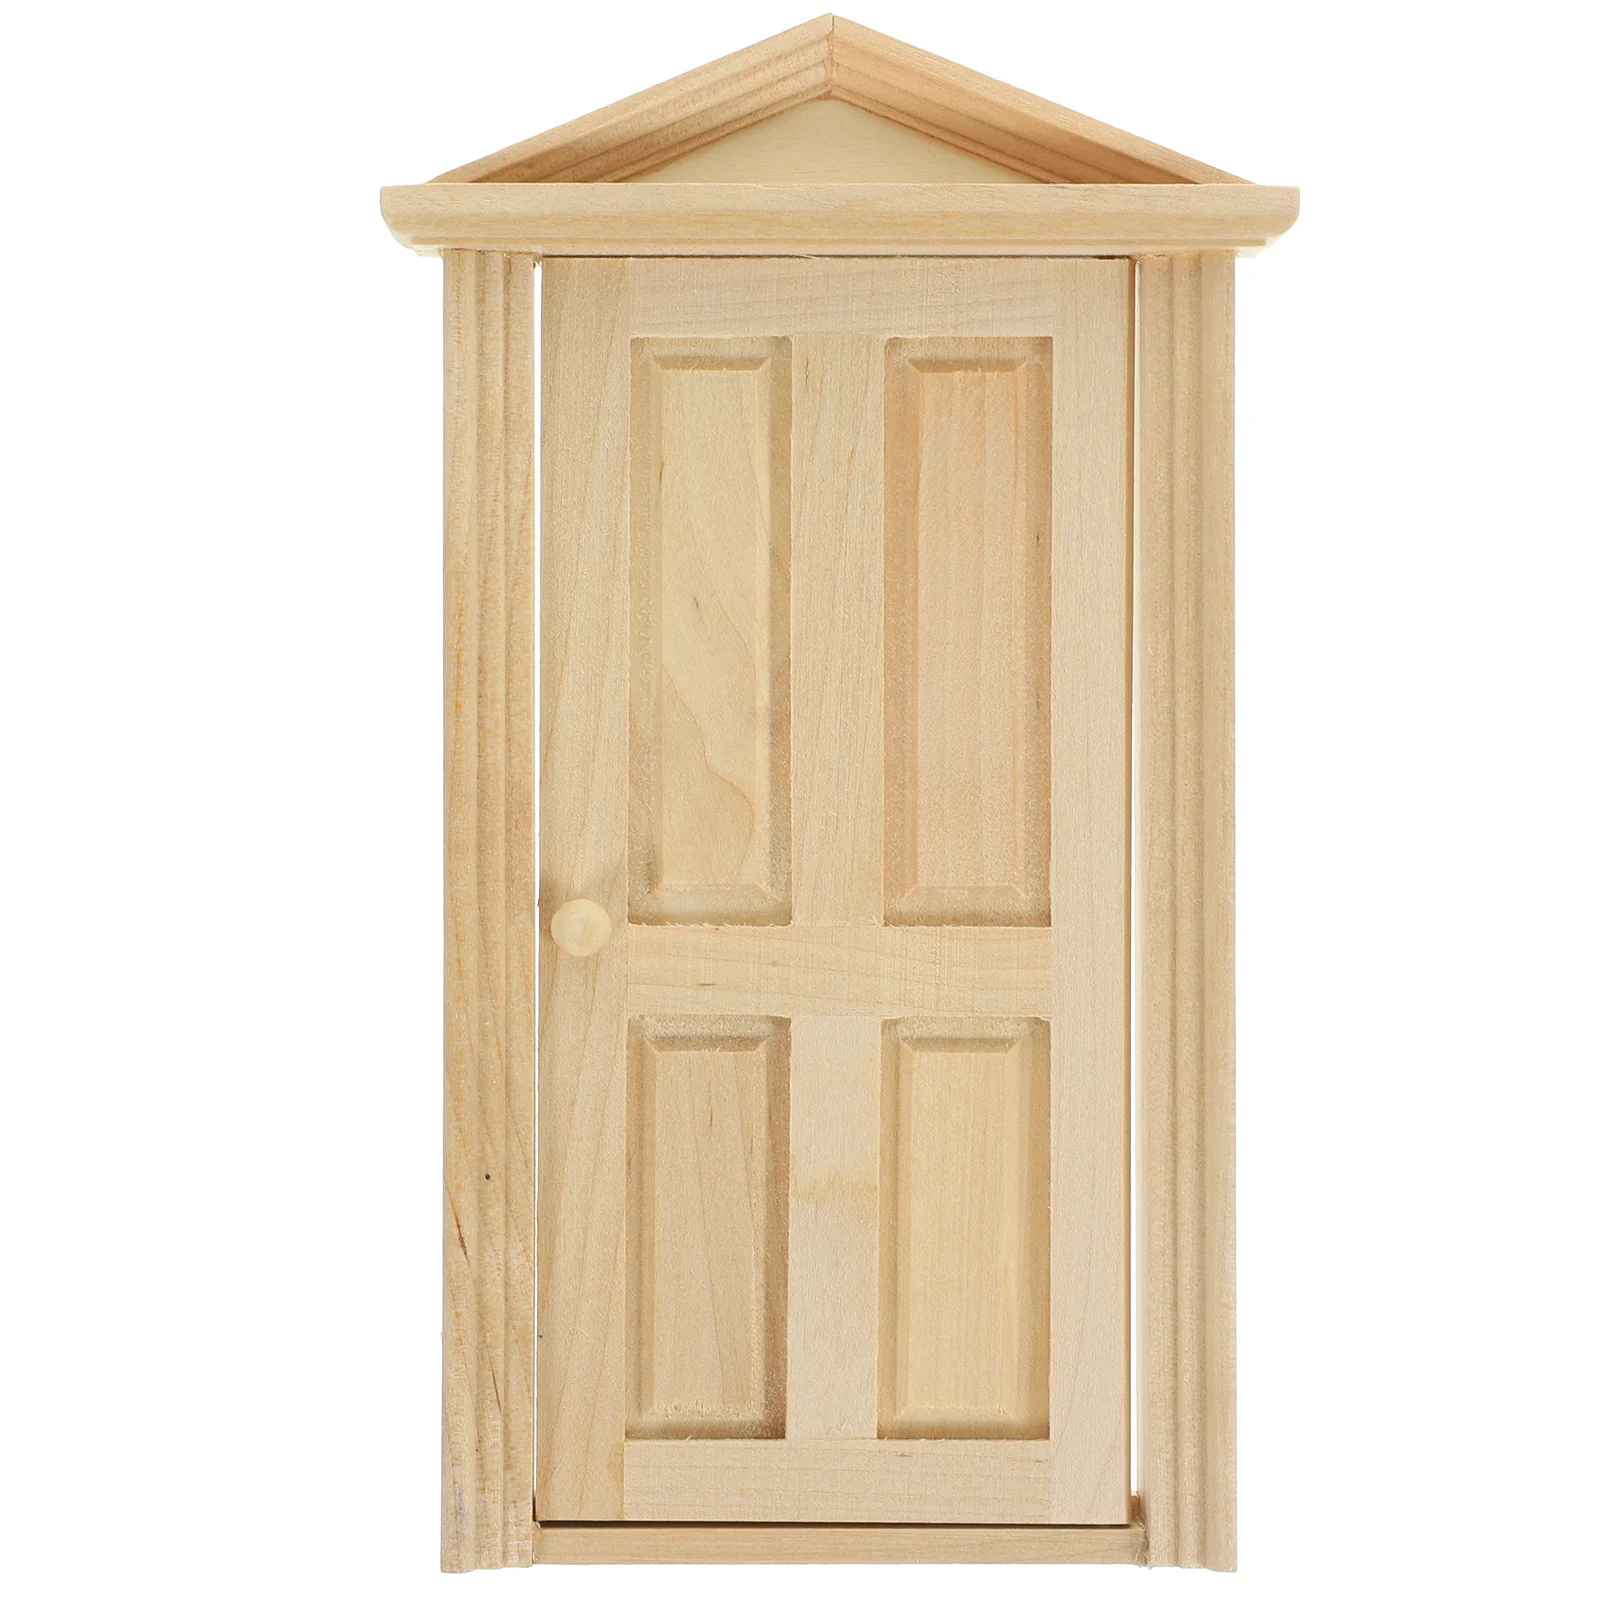 

Мини-дверь для кукольного домика, деревянная входная дверь, масштаб 1-12, «сделай сам»